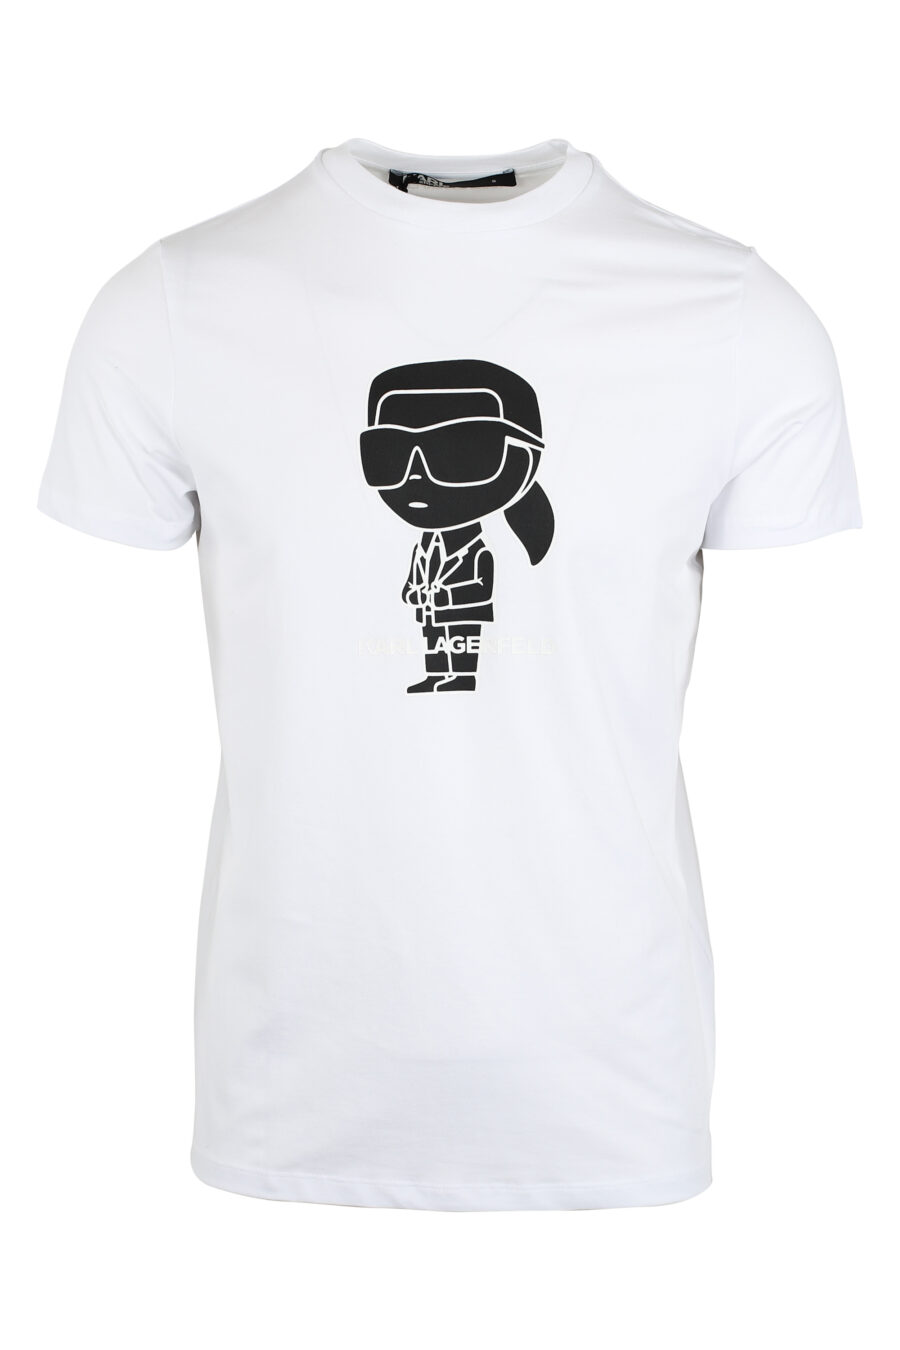 Camiseta blanca con maxilogo "karl" en contraste negro - IMG 9490